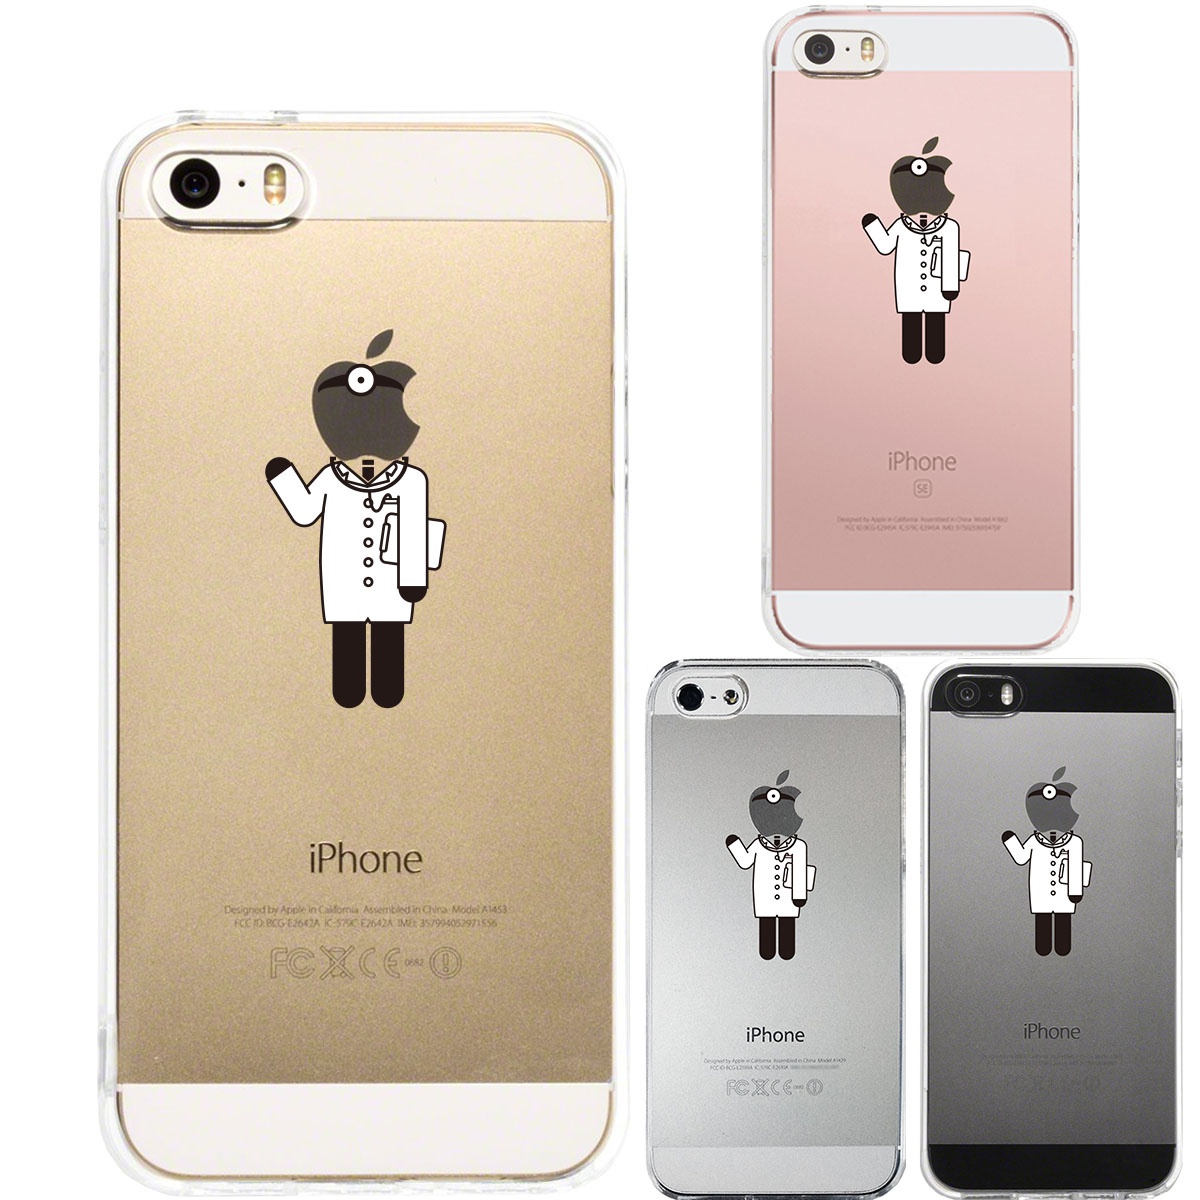 iPhone SE 5S/5 対応 アイフォン ハード クリア ケース カバー シェル ジャケット お仕事 職業 医者